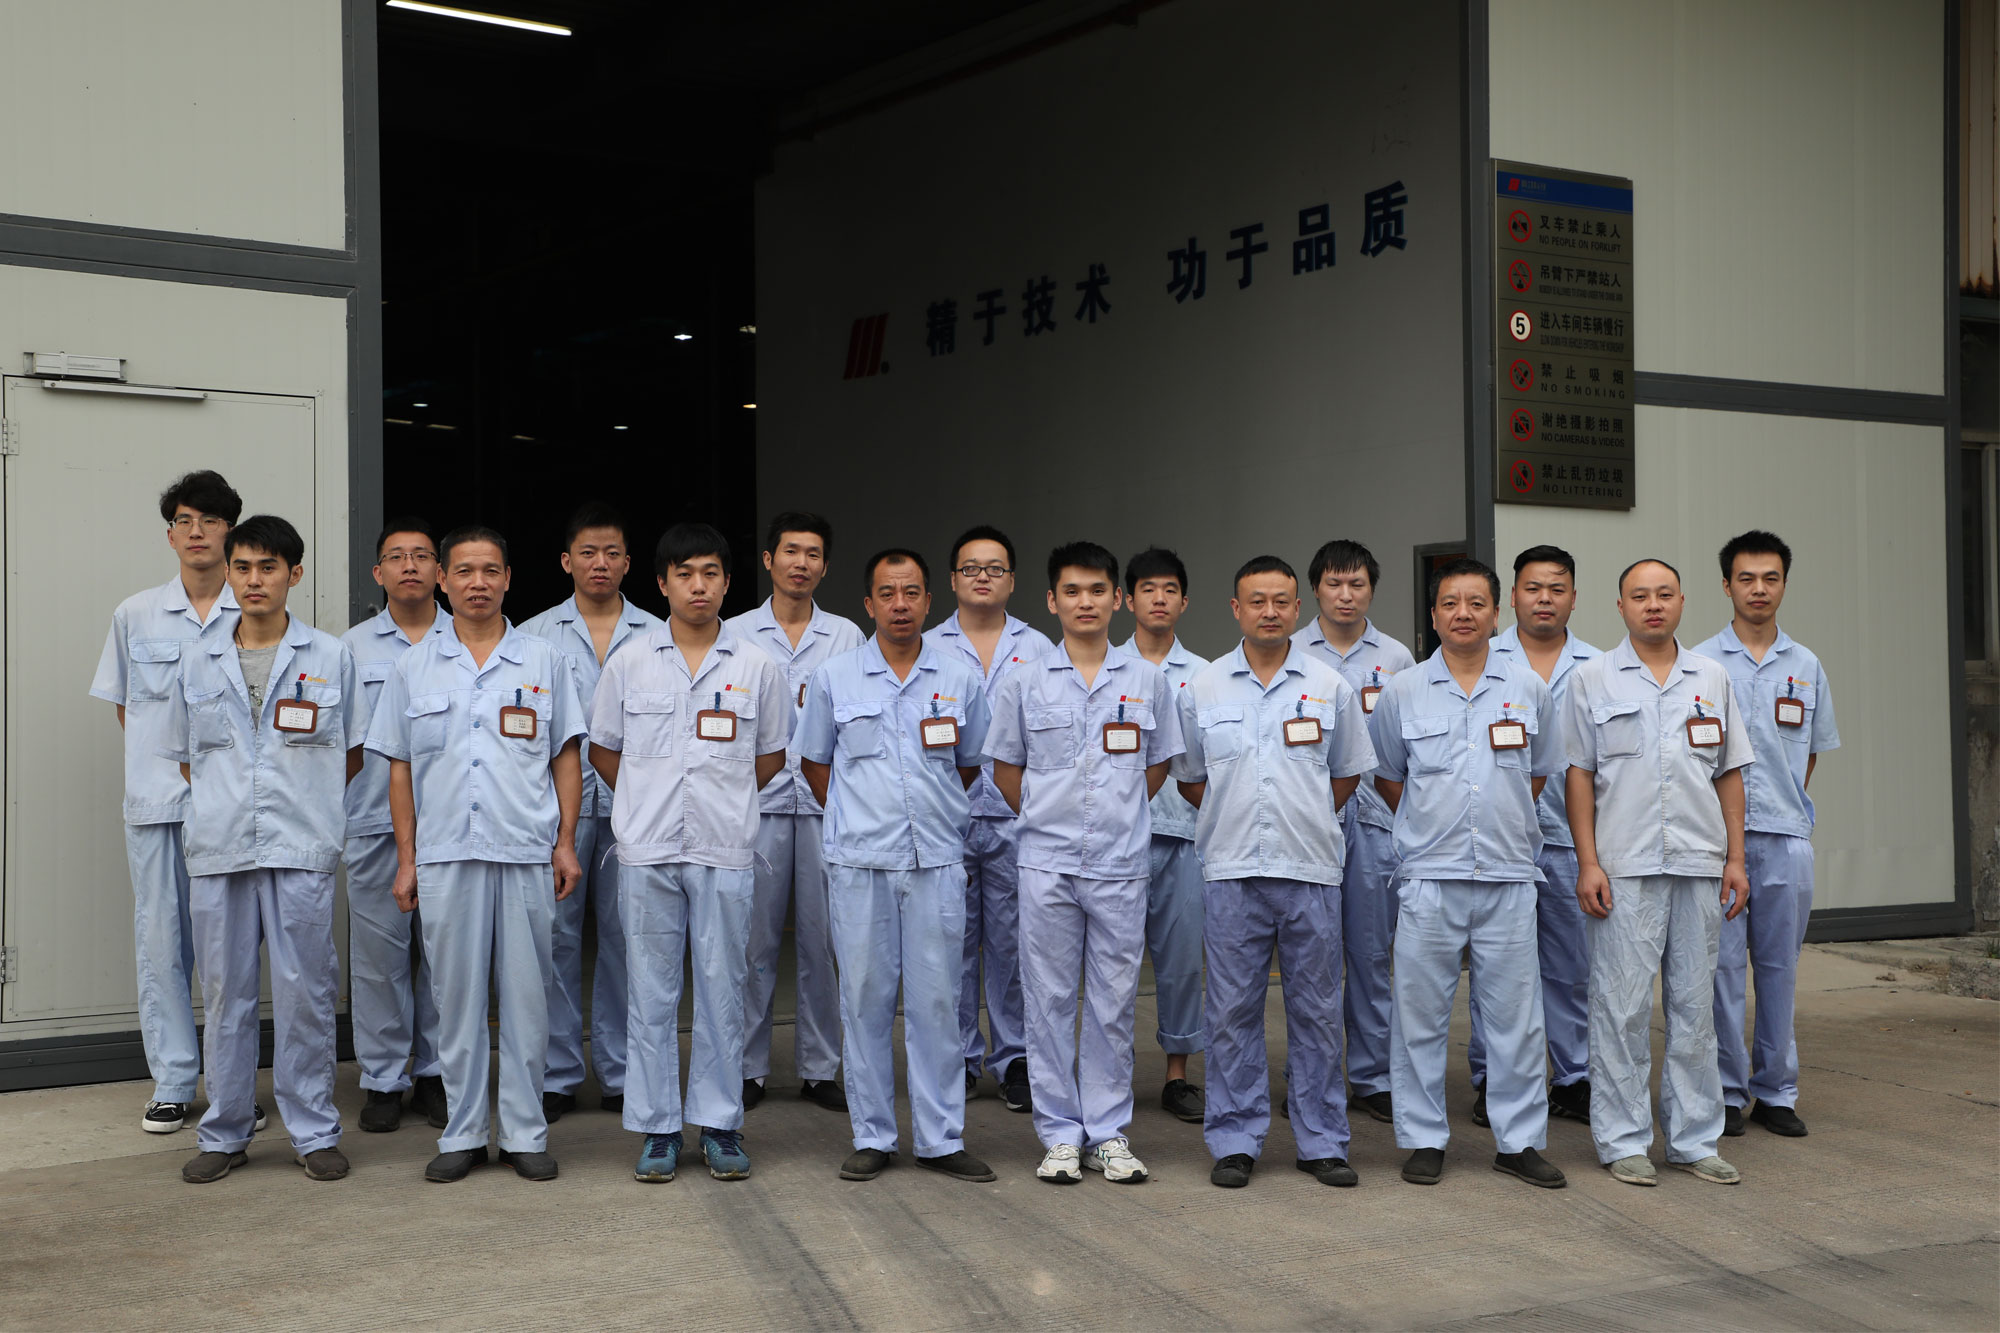 Jinggong technicians